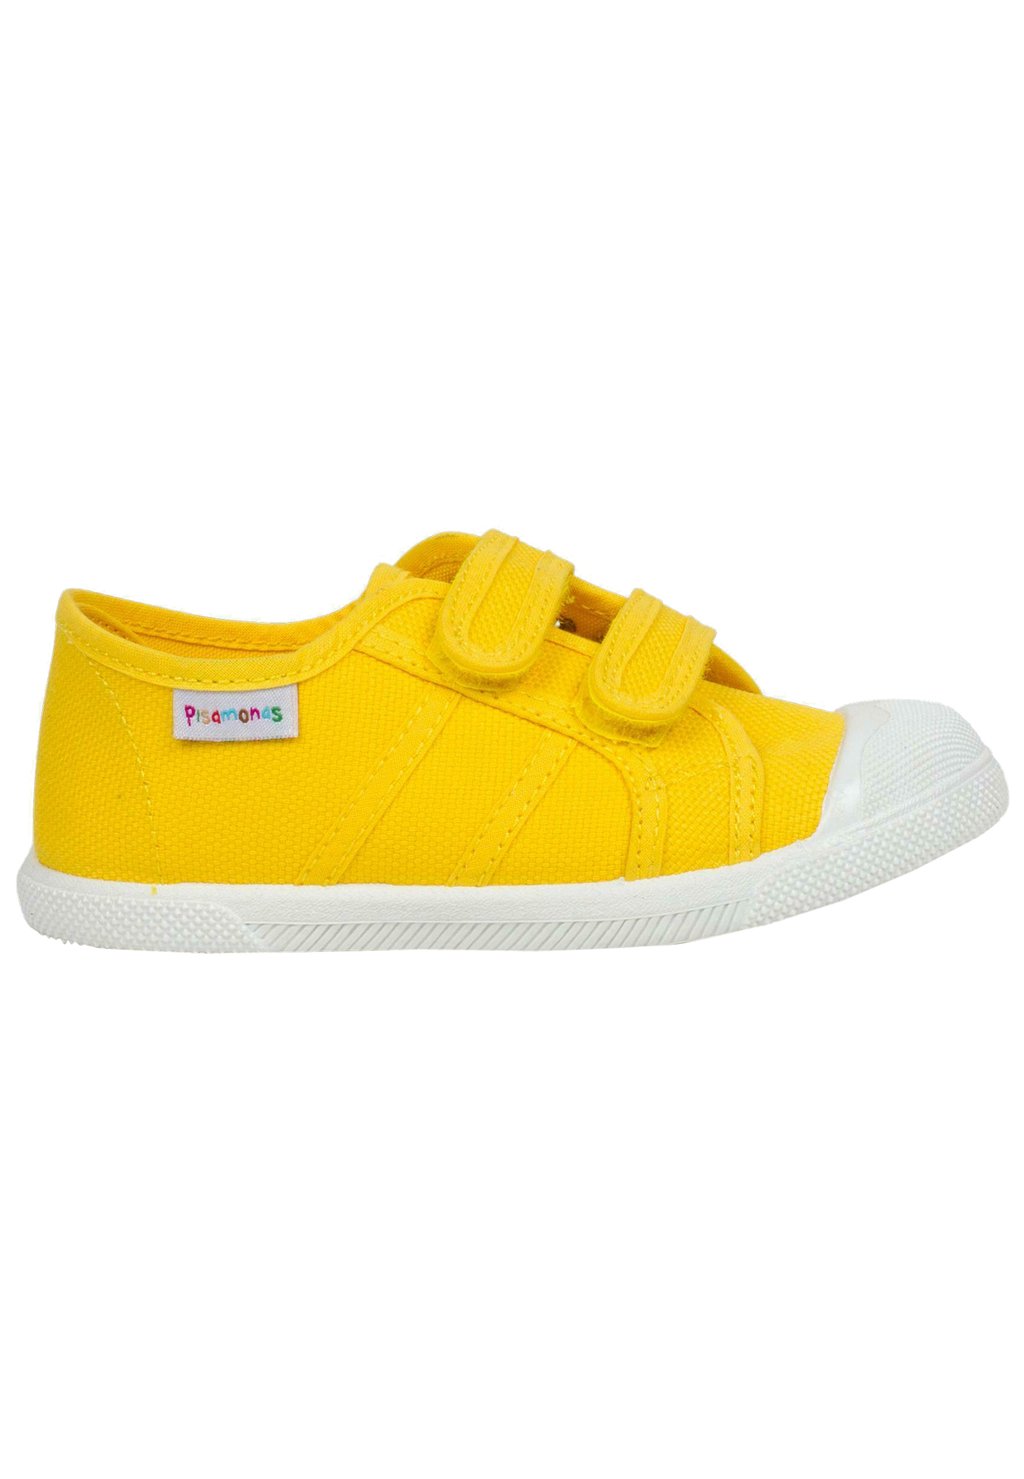 Первая обувь для ходьбы Pisamonas, цвет amarillo первая обувь для ходьбы shoesme цвет brons